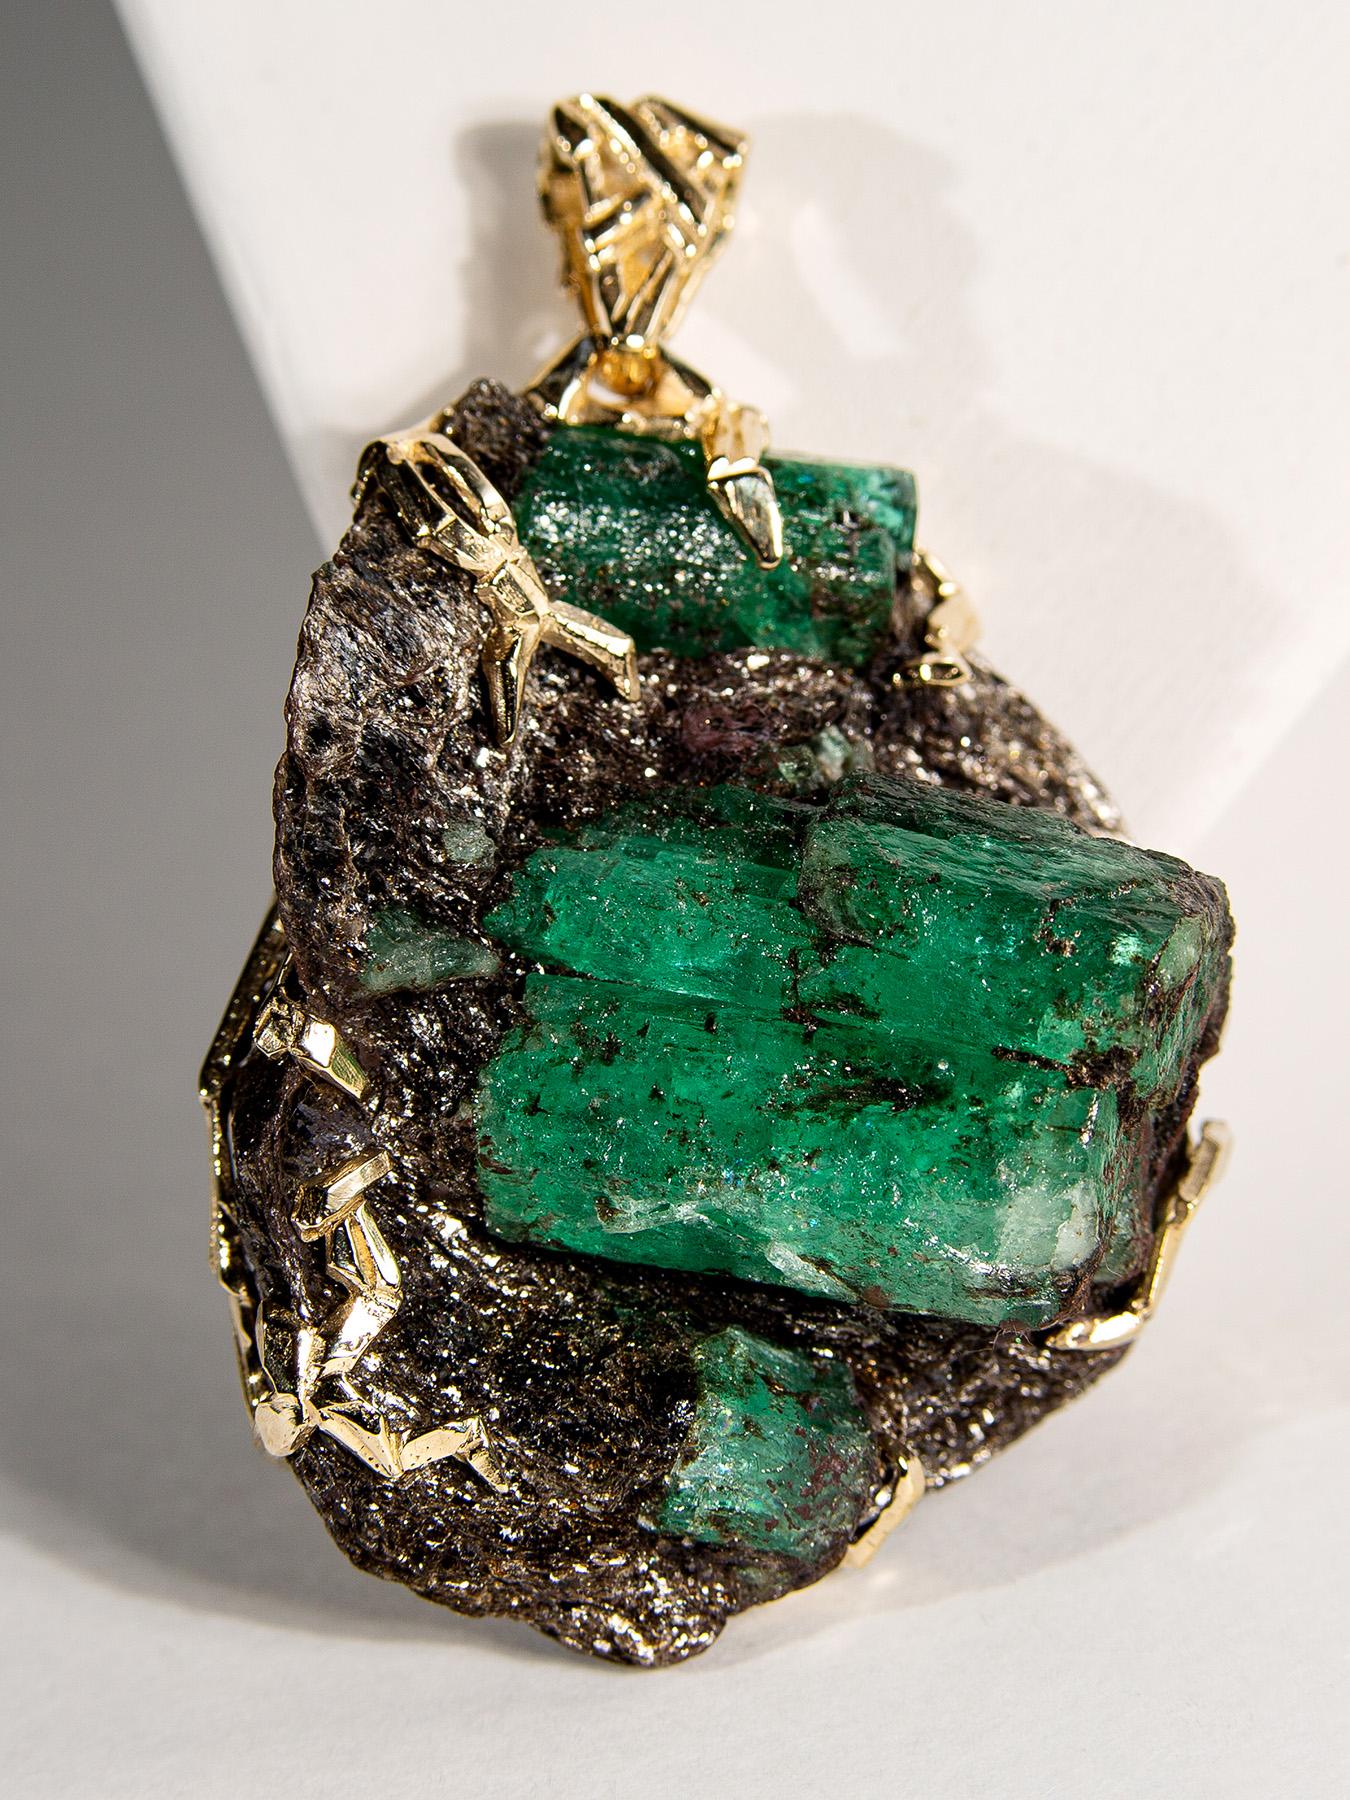 Artisan Emerald Crystal Gold Pendant Big Green Beryl 14 Karat Gold Necklace Christmas